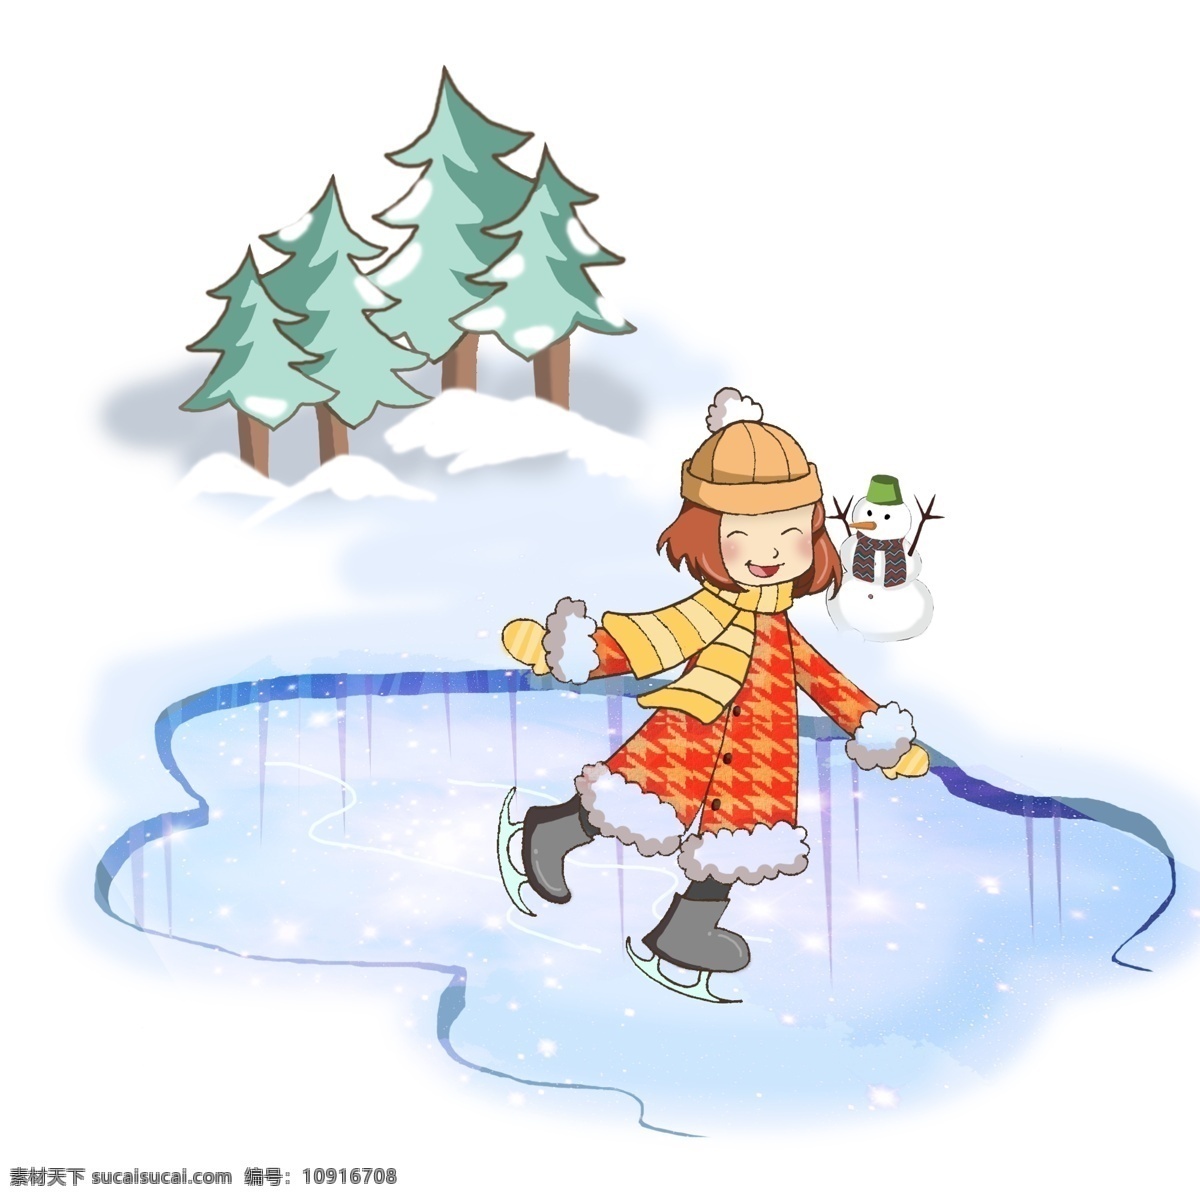 冬季 冬天 卡通 人物 活动 场景 可爱 美女 冰面 滑冰 雪橇滑雪 在家吃火锅 一堆情侣玩雪 可爱雪人 滑雪